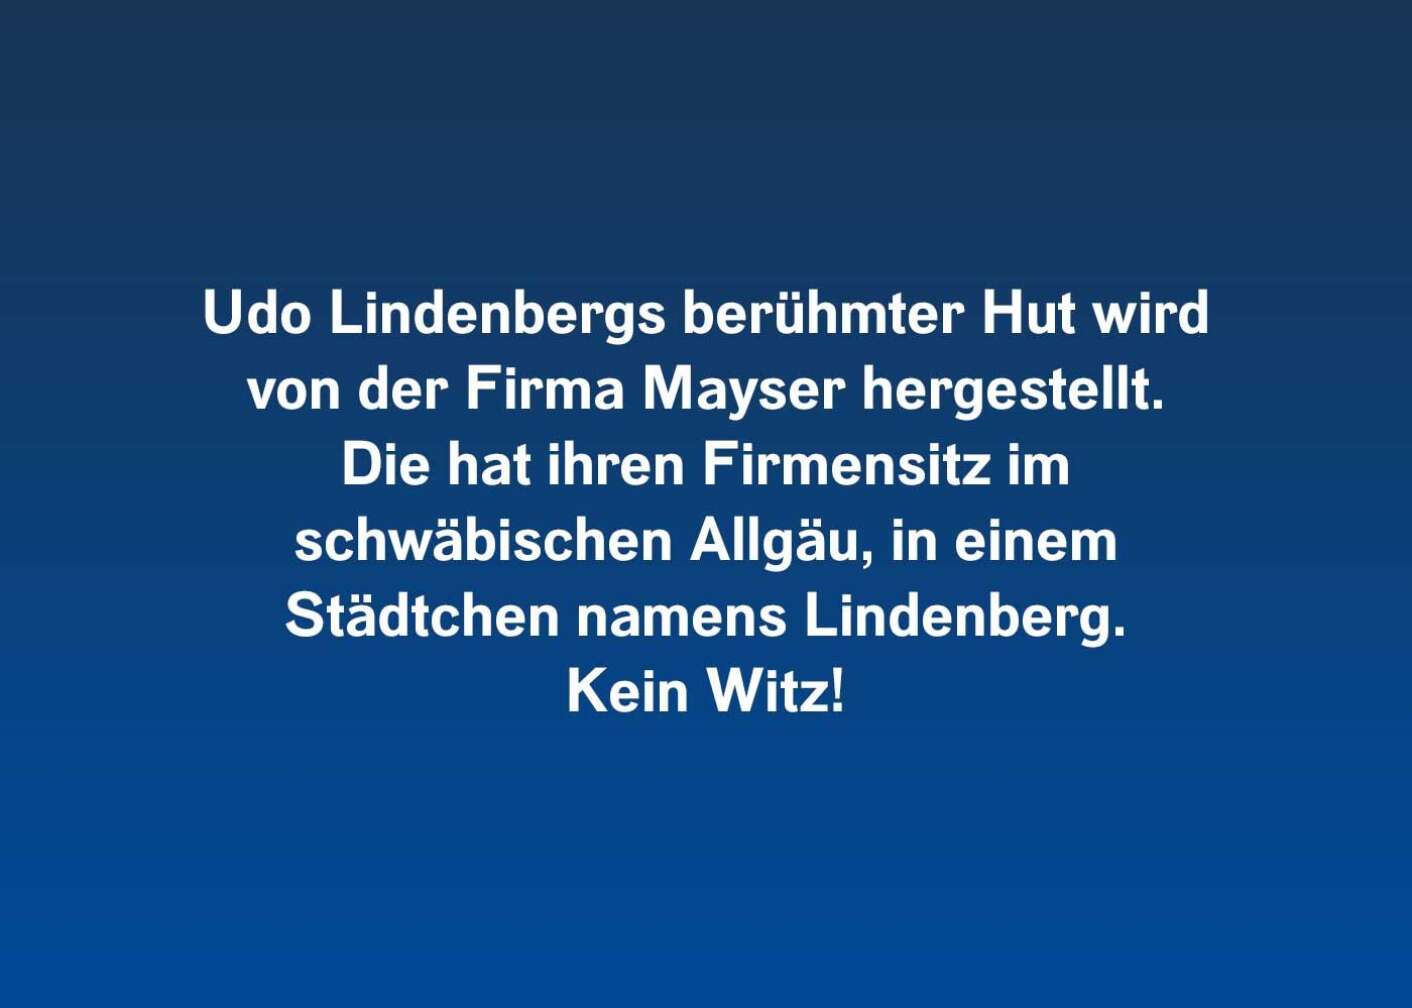 6 Fakten über Udo Lindenberg